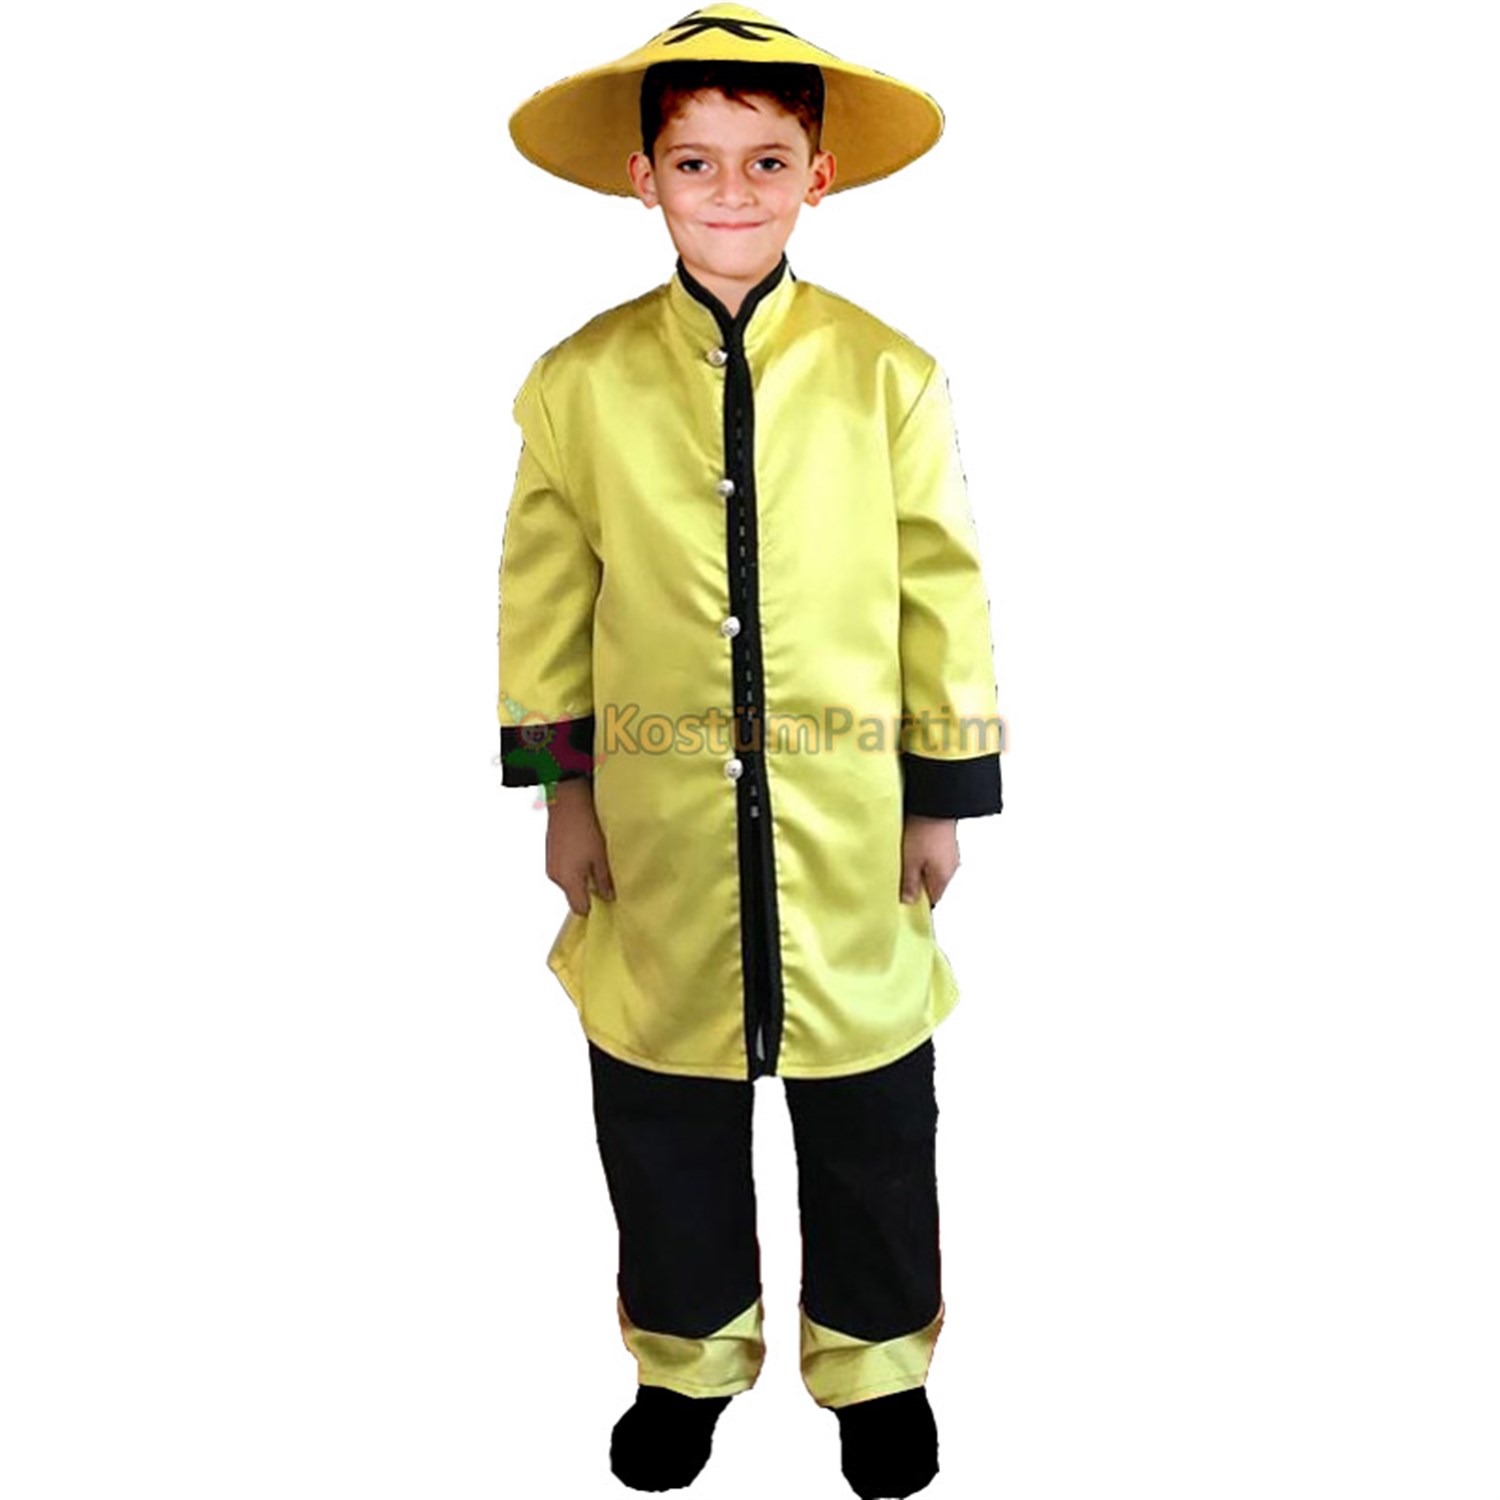 Çinli Kostümü, Çin Erkek Çocuk Kıyafeti - KostümPartim®